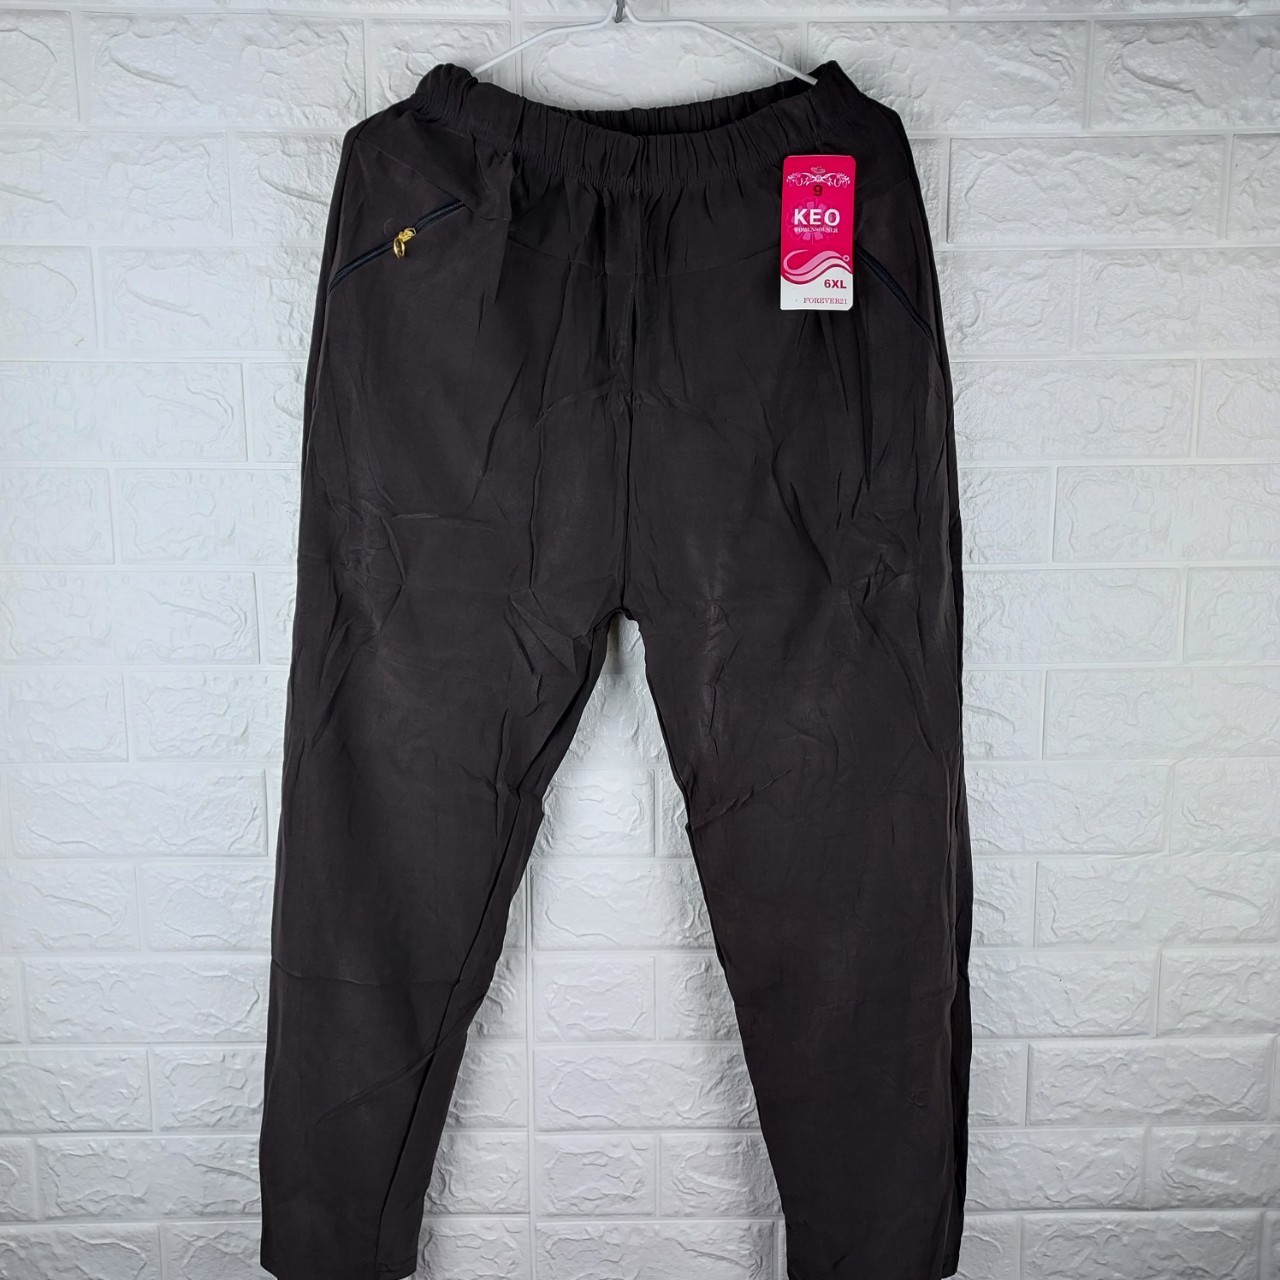 กางเกงทำงานผ้าเกาหลี ฟรีไซส์ ราคาถูก เอว 38 - 42 นิ้ว